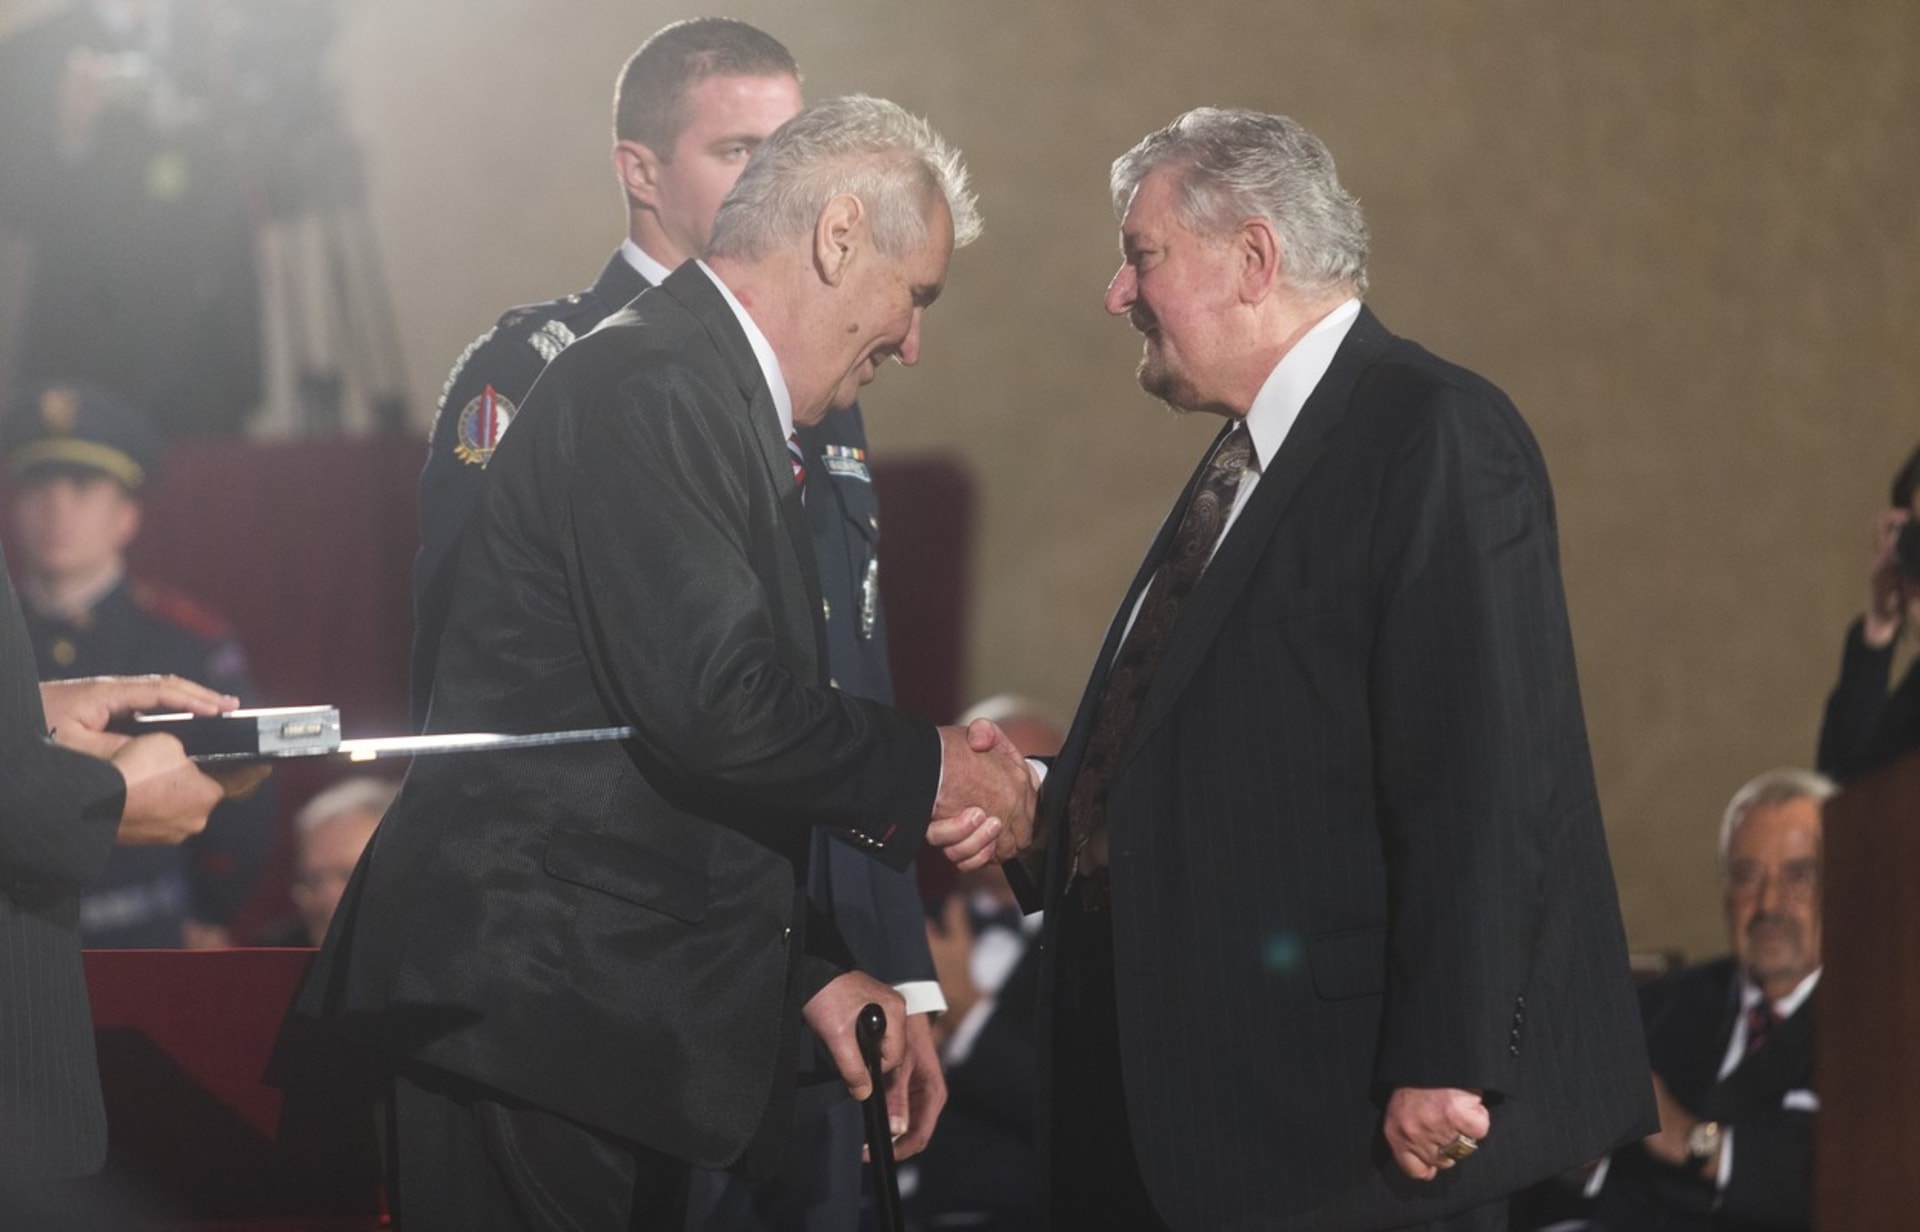 Ekonom Milan Zelený obdržel v roce 2017 Medaili Za zásluhy I. stupně z rukou tehdejšího prezidenta Miloše Zemana.